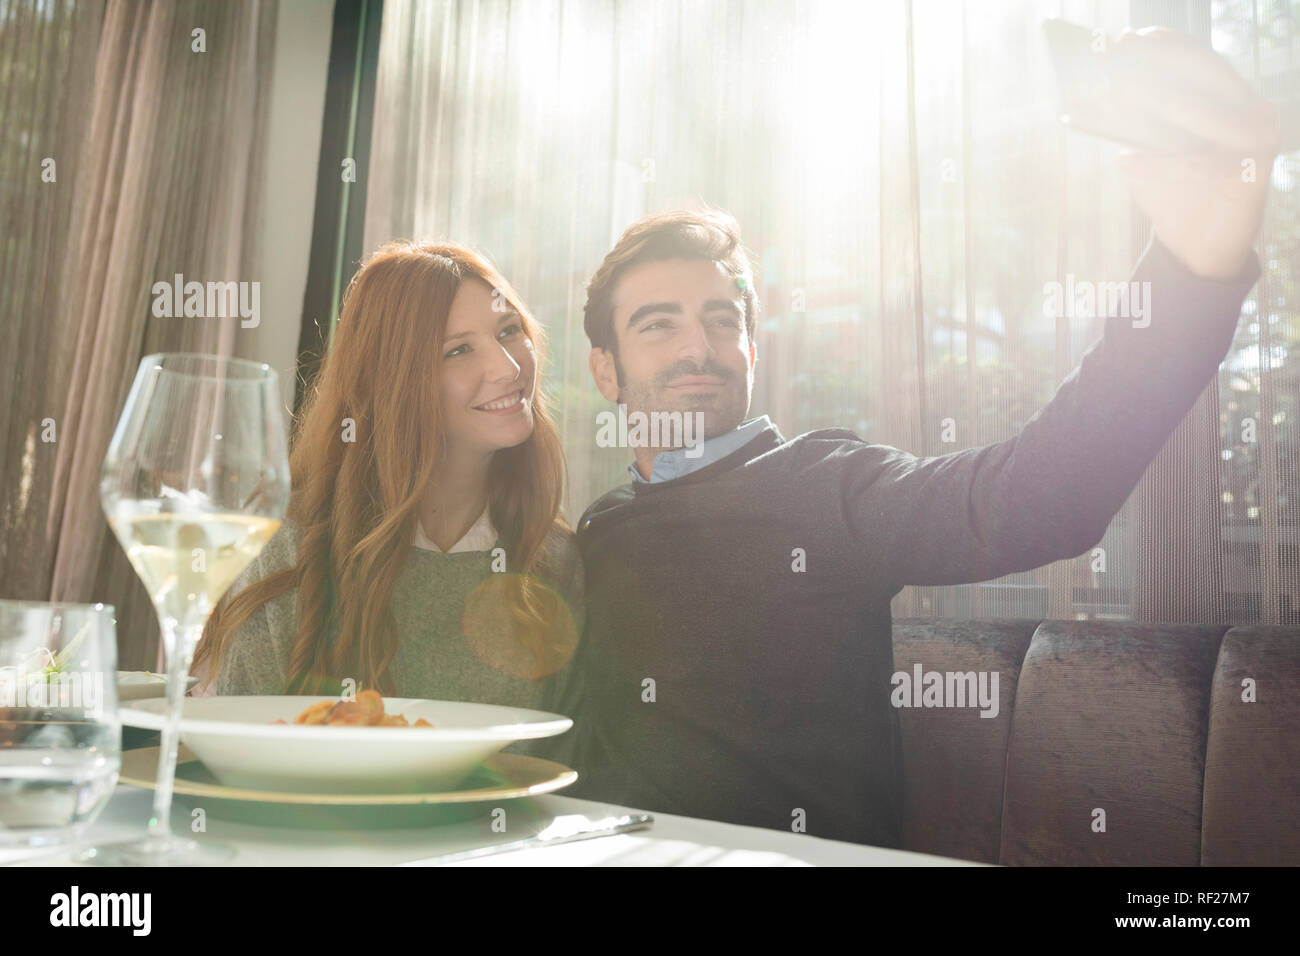 Lächelndes Paar ein selfie in einem Restaurant Stockfoto